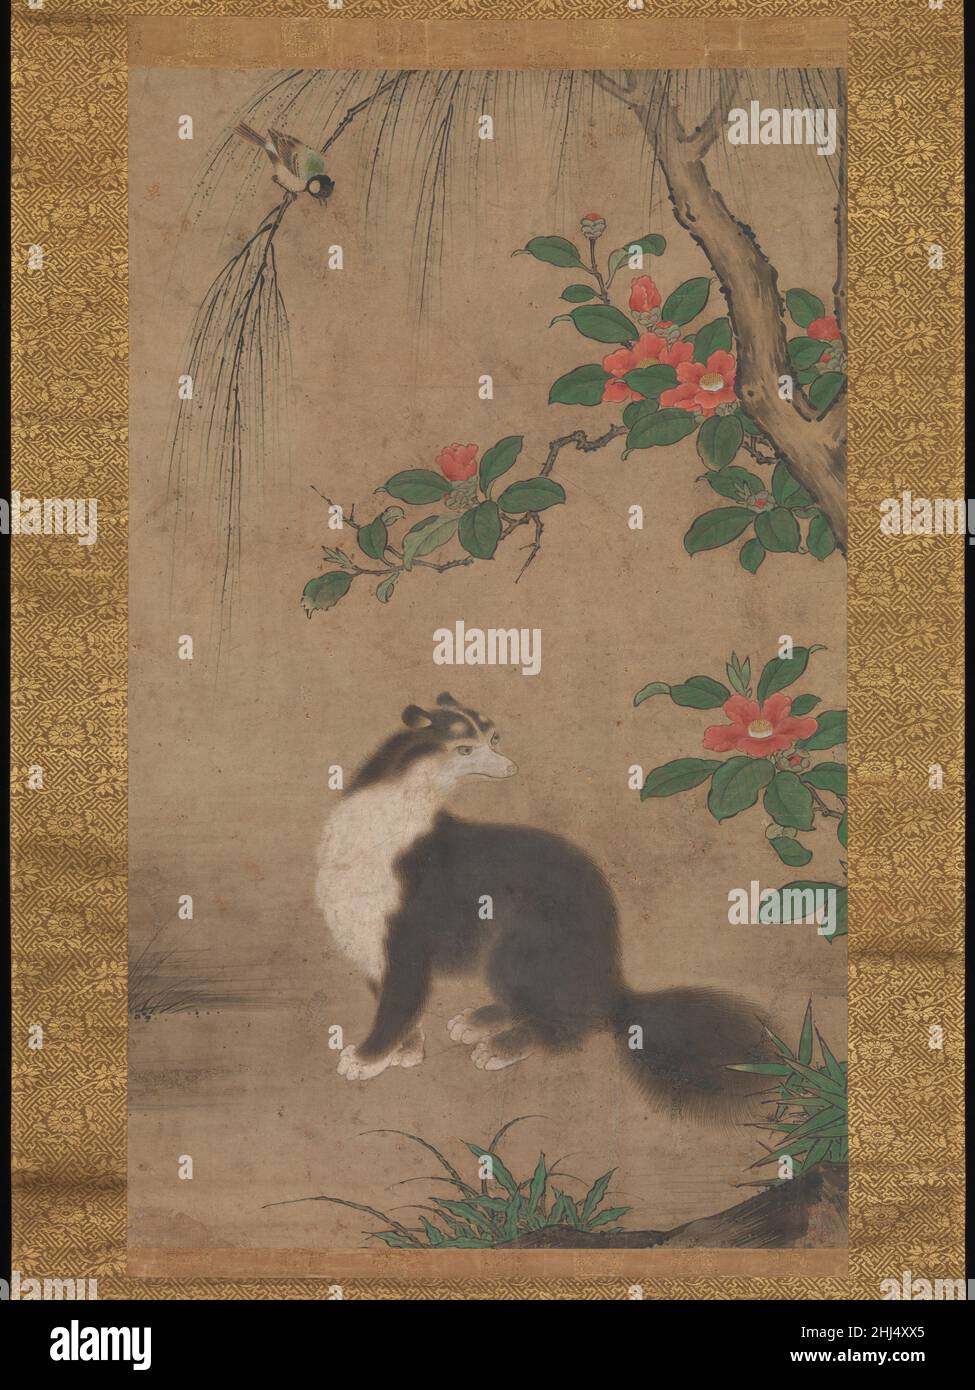 Moschuskatze Mitte bis Ende des 16th. Jahrhunderts Uto Gyoshi Eine flauschige schwarz-weiße Moschuskatze hält an einem späten Wintertag neben einer blühenden roten Kamelie inne und tut sein Bestes, um die aufgeregte Titmaus auf einem Weidenweide über ihm zu ignorieren. Obwohl sie nicht aus Japan stammten, waren Moschuskatzen (jakōneko) oder Civets in Japan durch frühe chinesische Gemälde bekannt, die ab dem 1200s importiert wurden. Diese nächtlichen, katzenartigen Säugetiere wurden zu einem bevorzugten Thema von Künstlern, die mit der beeindruckenden Kano-Schule verbunden waren, die Ende 1400s in Kyoto gegründet wurde. Ein großes quadratisches Siegel unten rechts nennt den Maler dieses Werkes Uto Gyosh Stockfoto